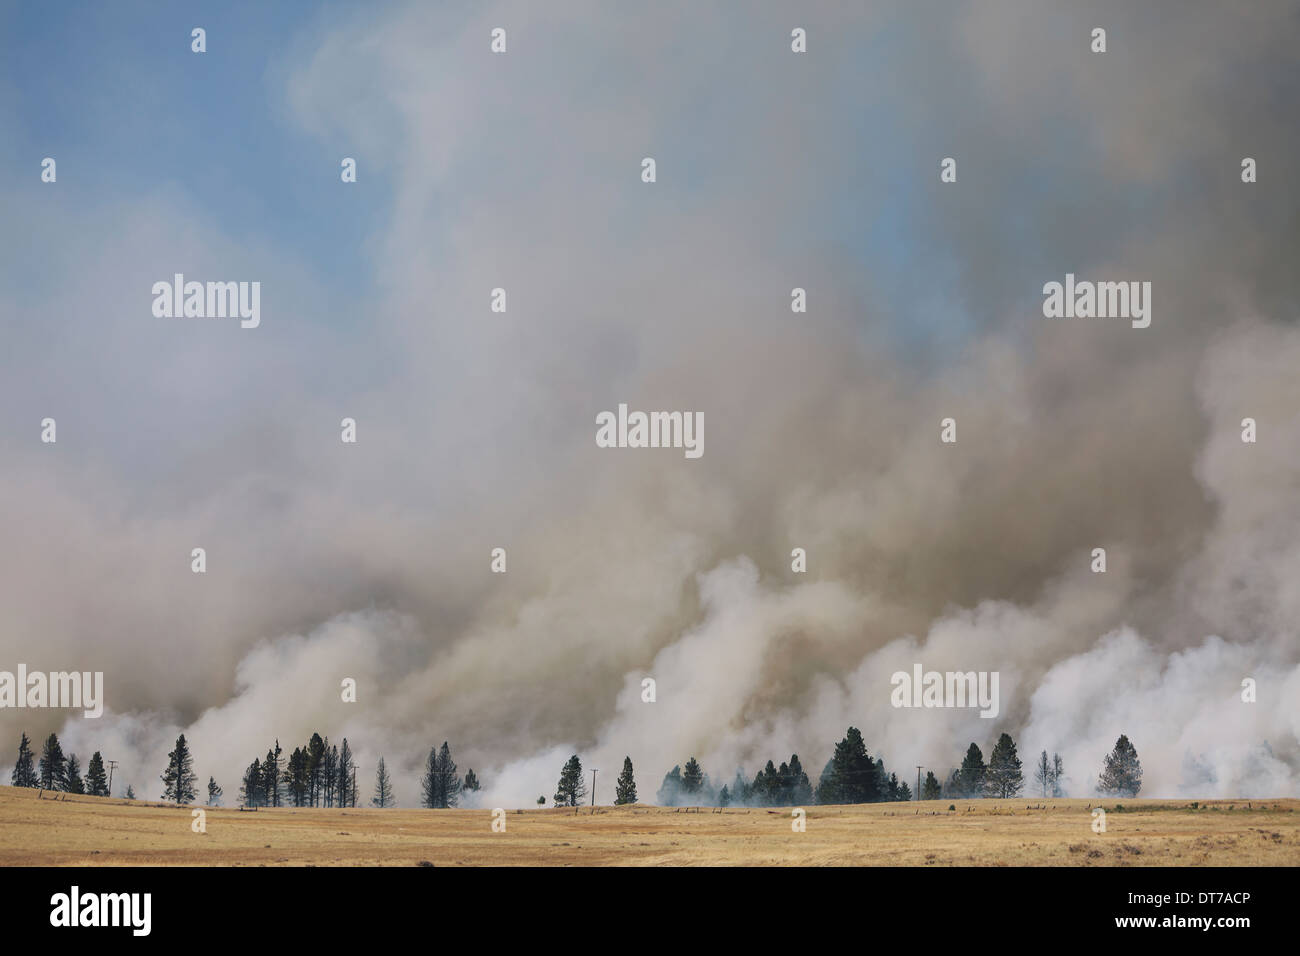 Un grand feu de forêt près de Worcester dans le comté de Kittitas La fumée s'élevant au-dessus des arbres Ellensburg Kittitas Comté Washington USA Banque D'Images